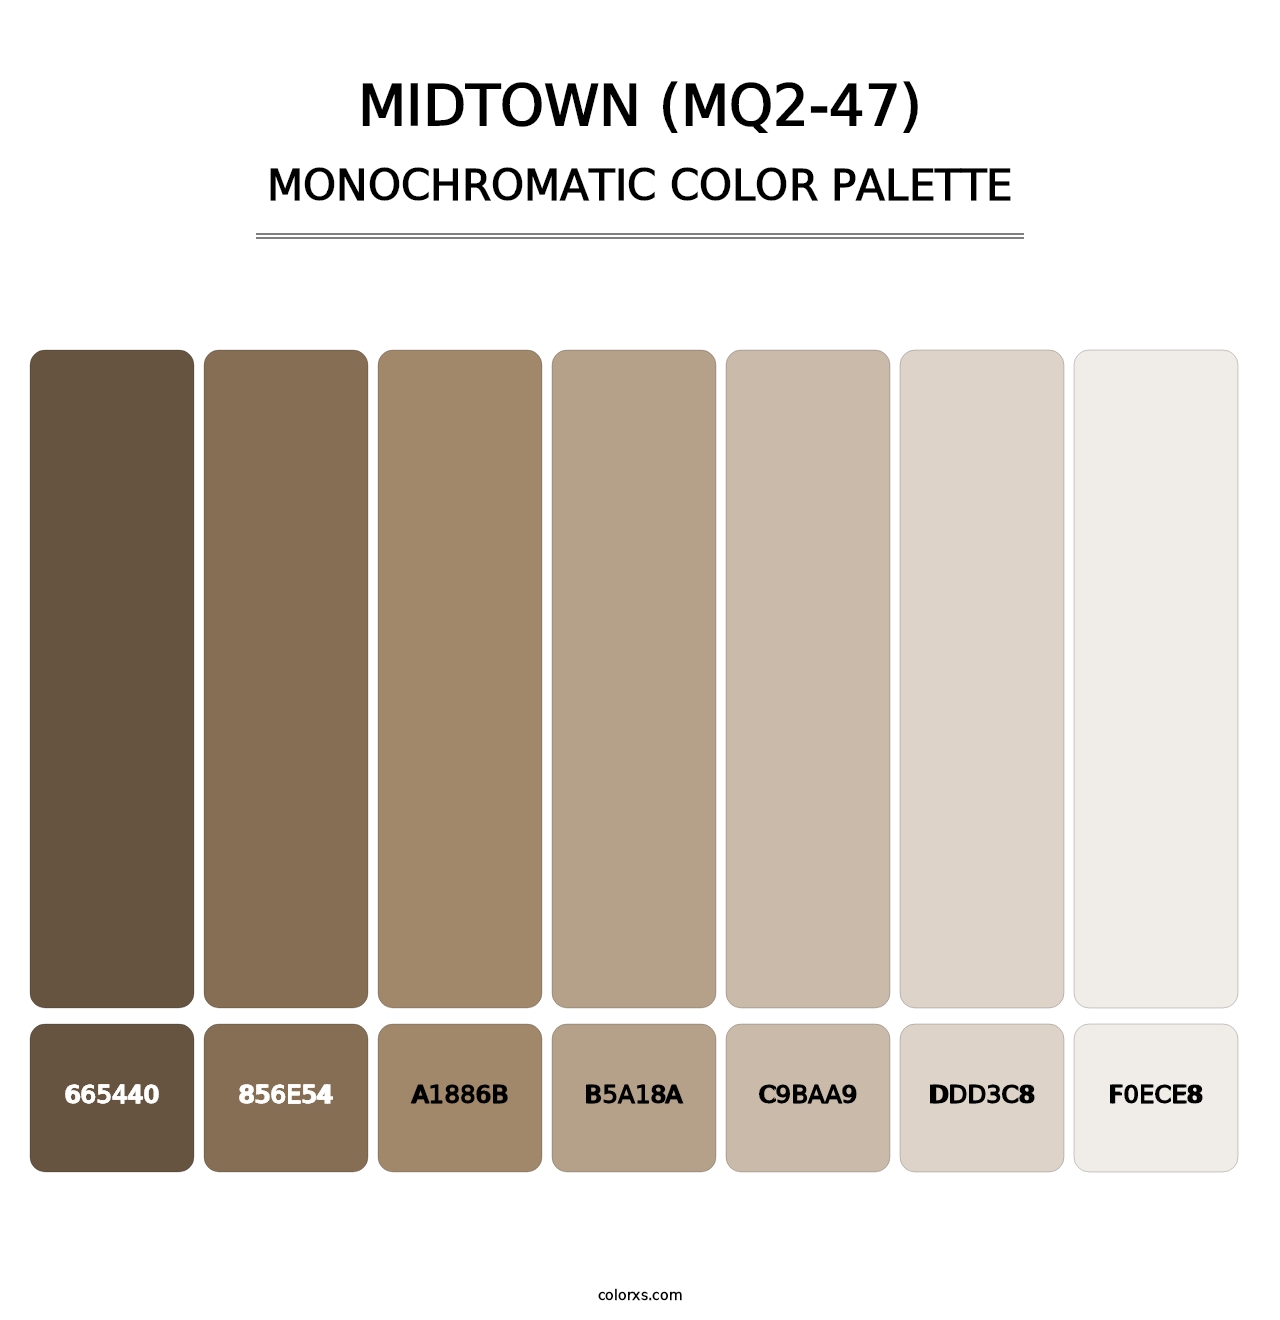 Midtown (MQ2-47) - Monochromatic Color Palette